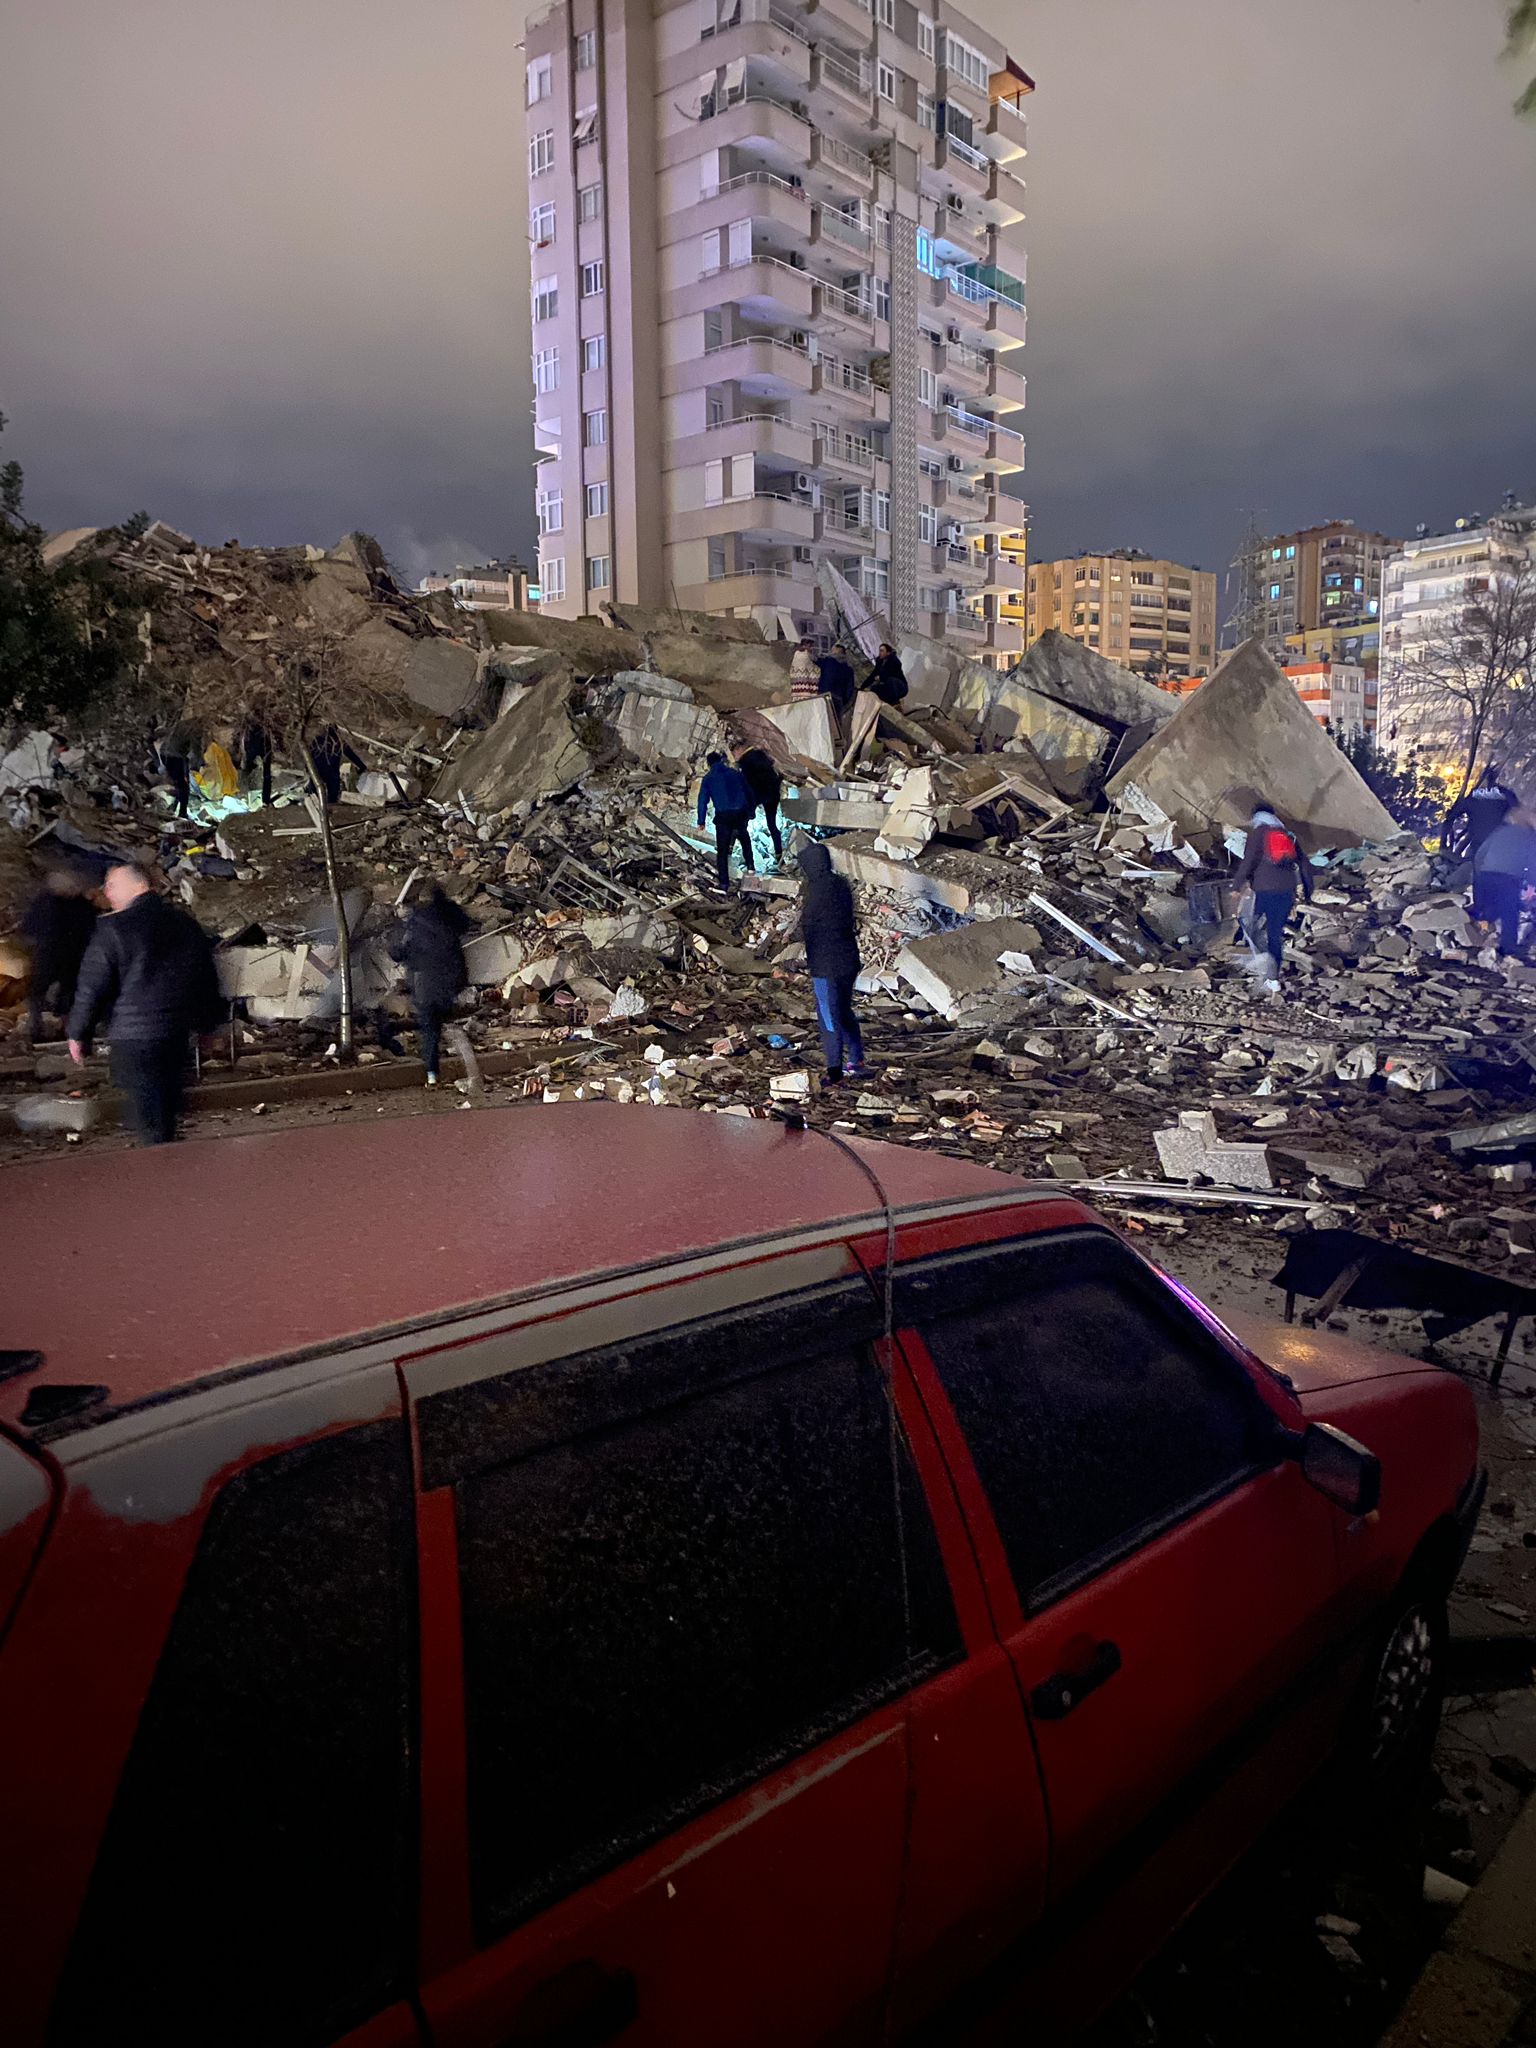 VIDEO: Rescatistas trabajan entre los escombros buscando sobrevivientes que causó el terremoto de 7.8 grados